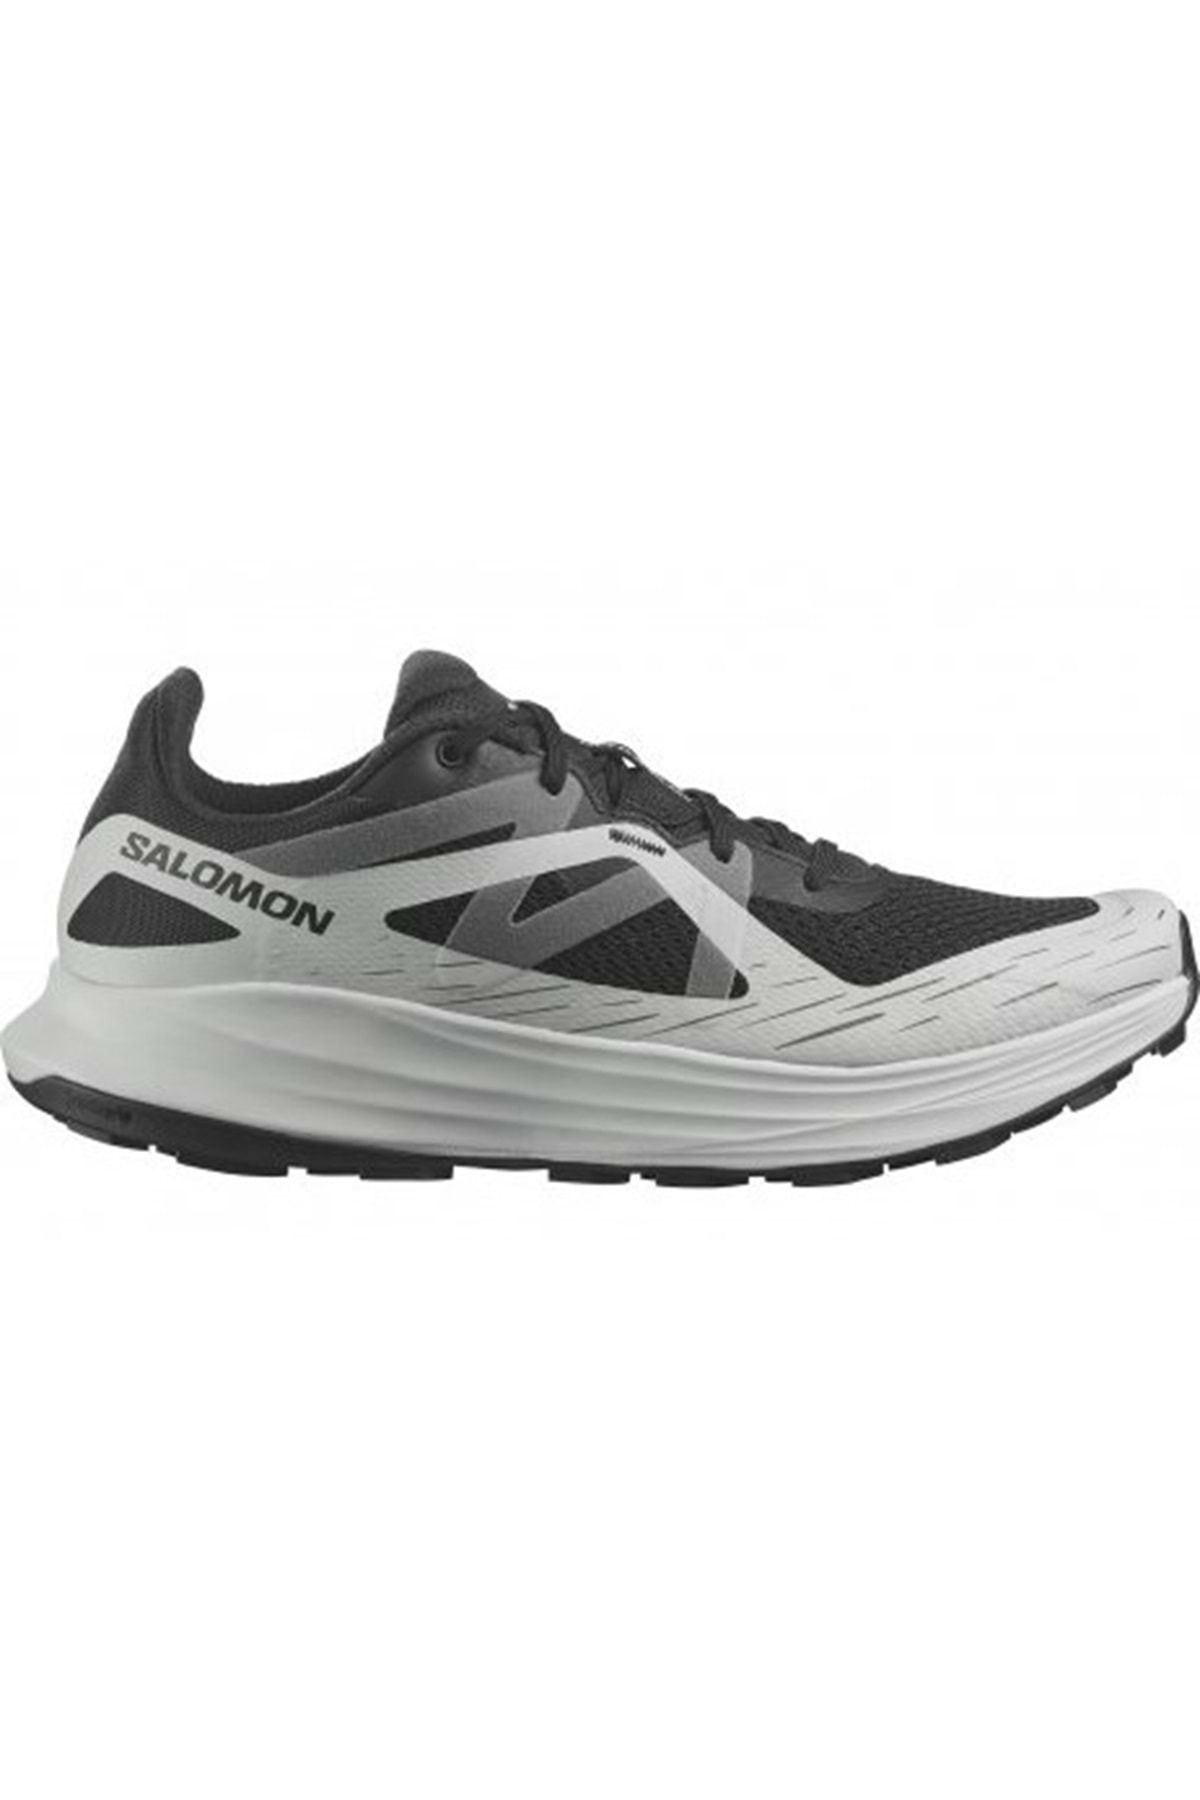 Salomon Ultra Flow L47525300 Patika Koşu Ayakkabısı Erkek Spor Ayakkabı Beyaz